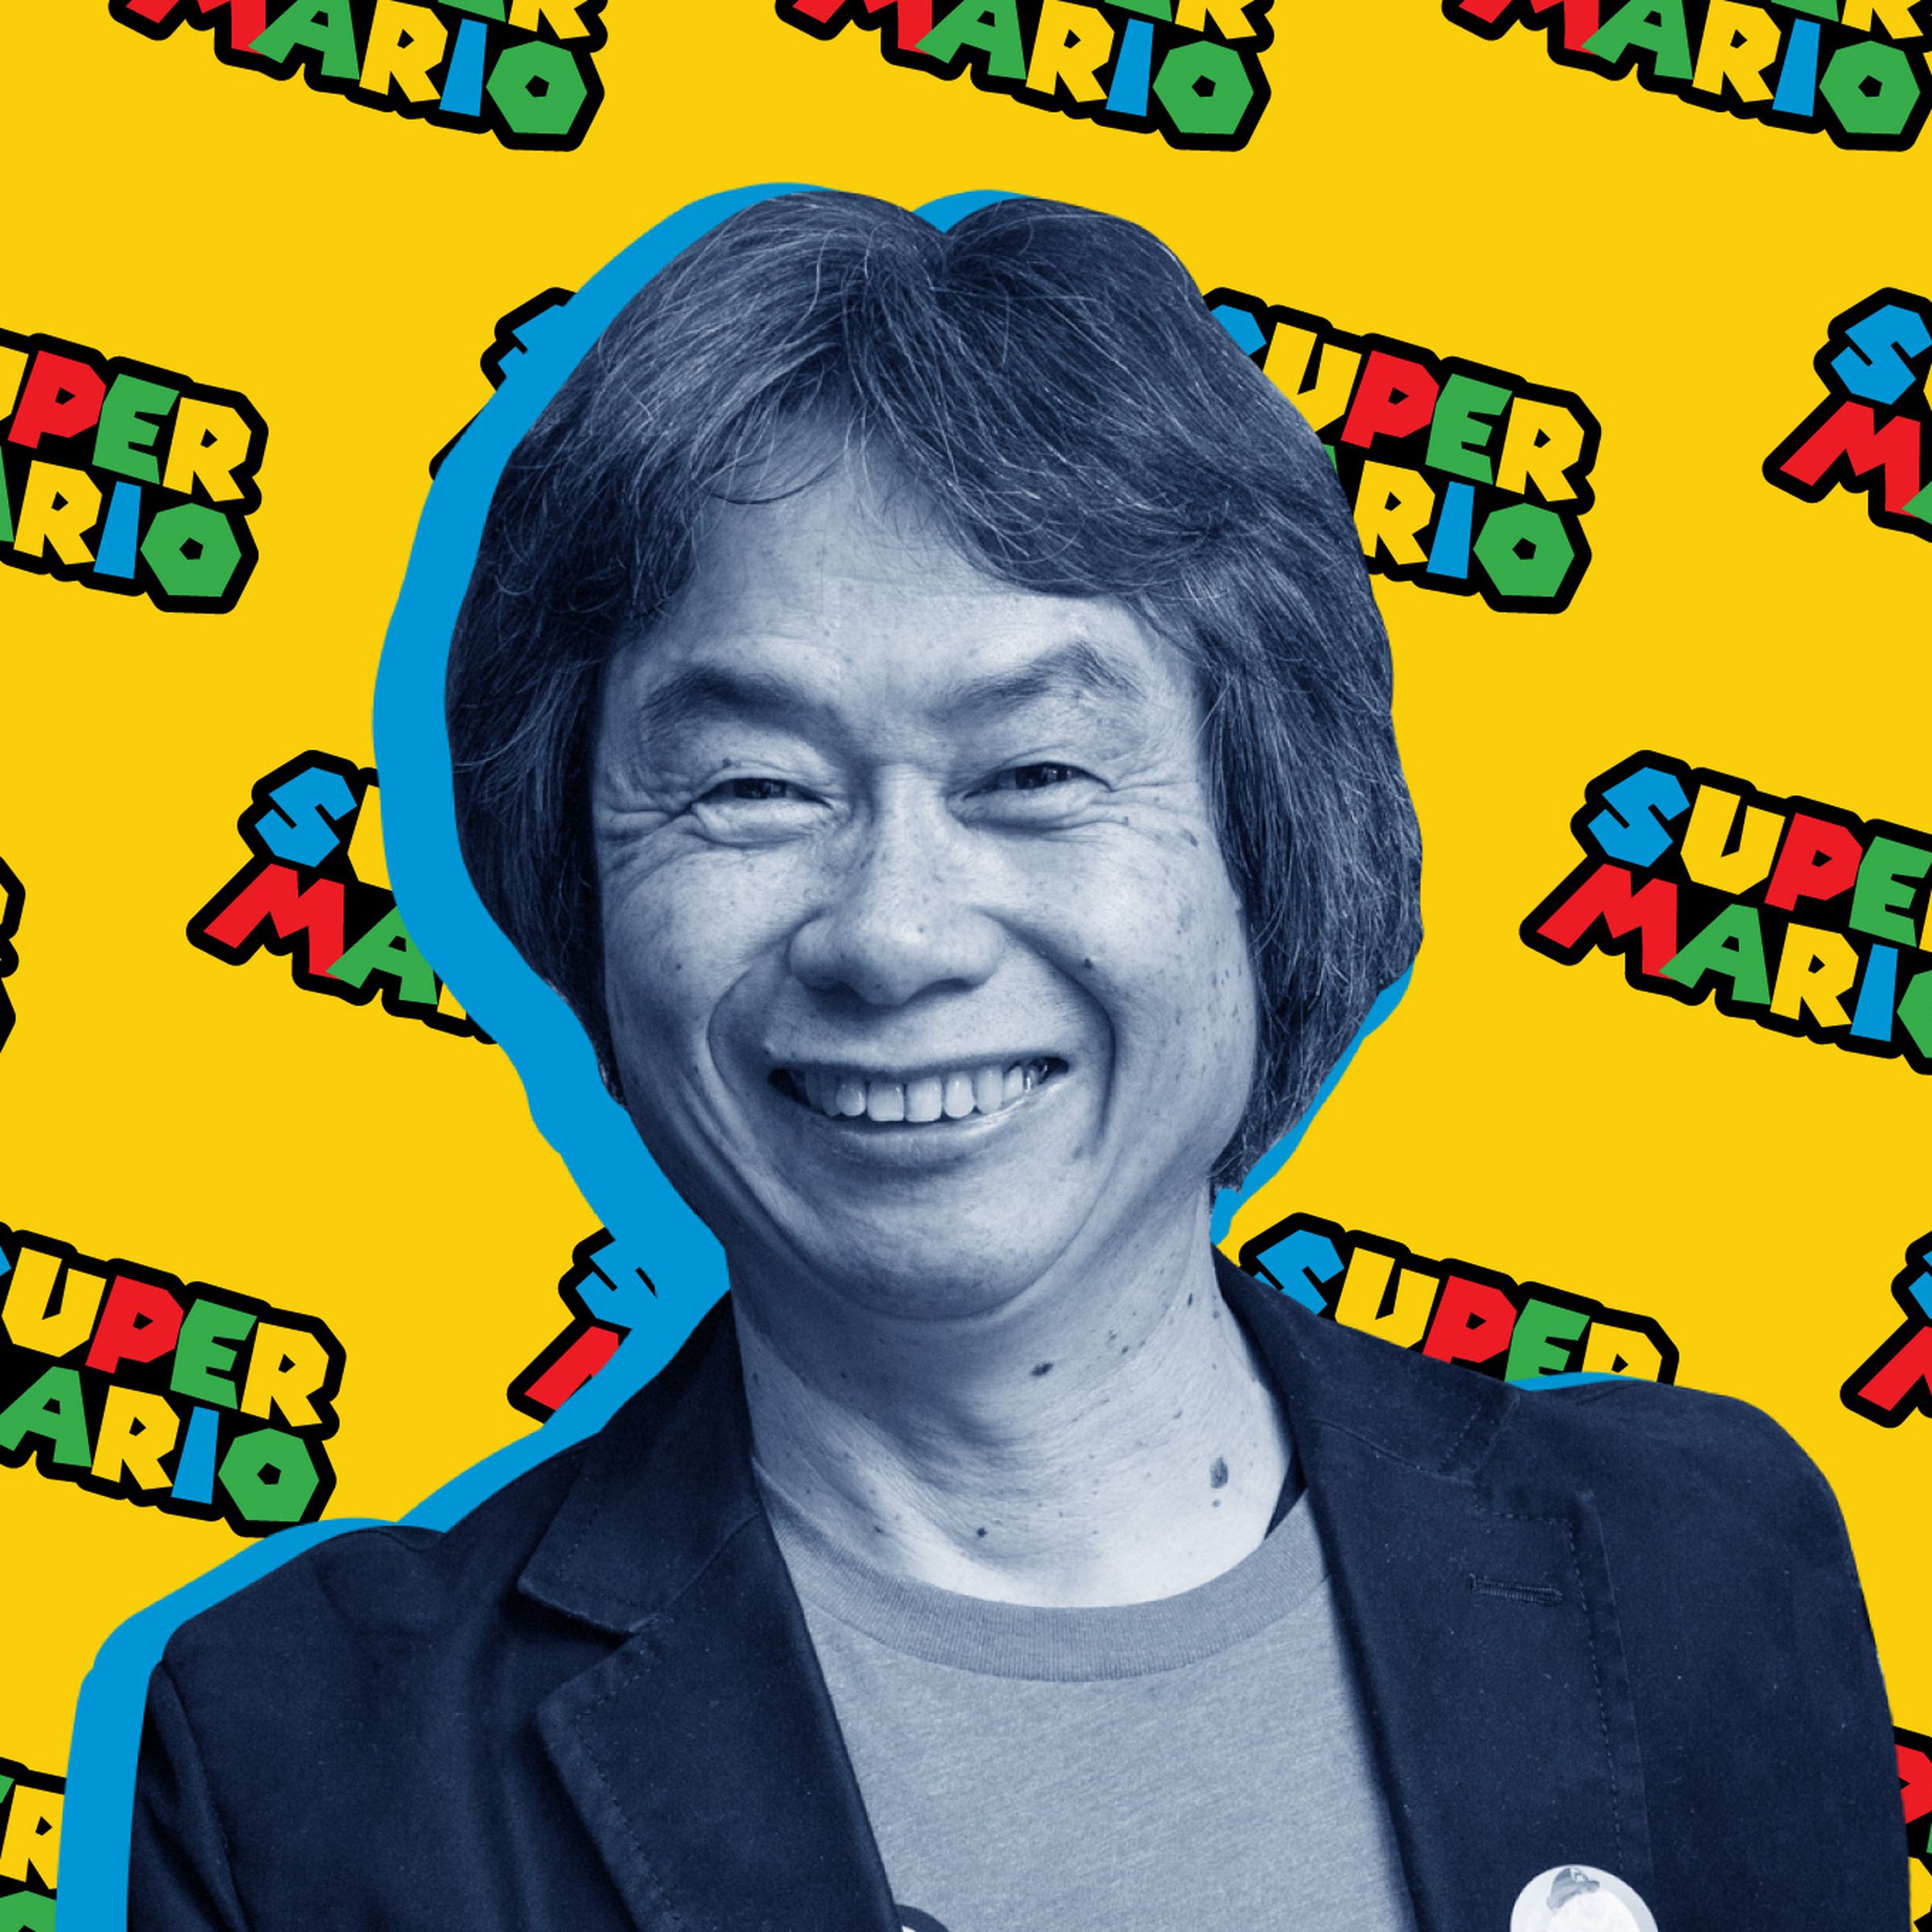 A photo illustration of Shigeru Miyamoto.